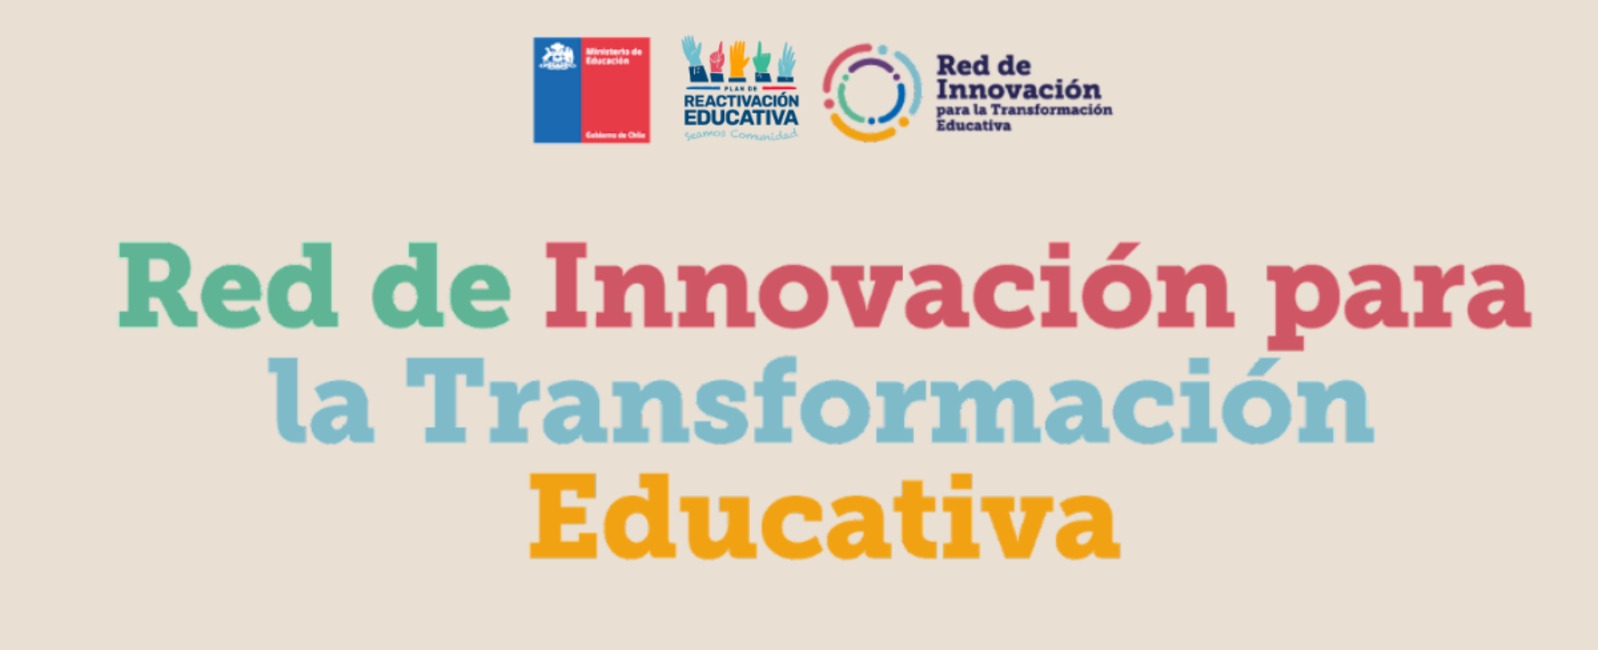 Unidad de Currículum y Evaluación participa de Mesa de la Red de Innovación para la Transformación Educativa